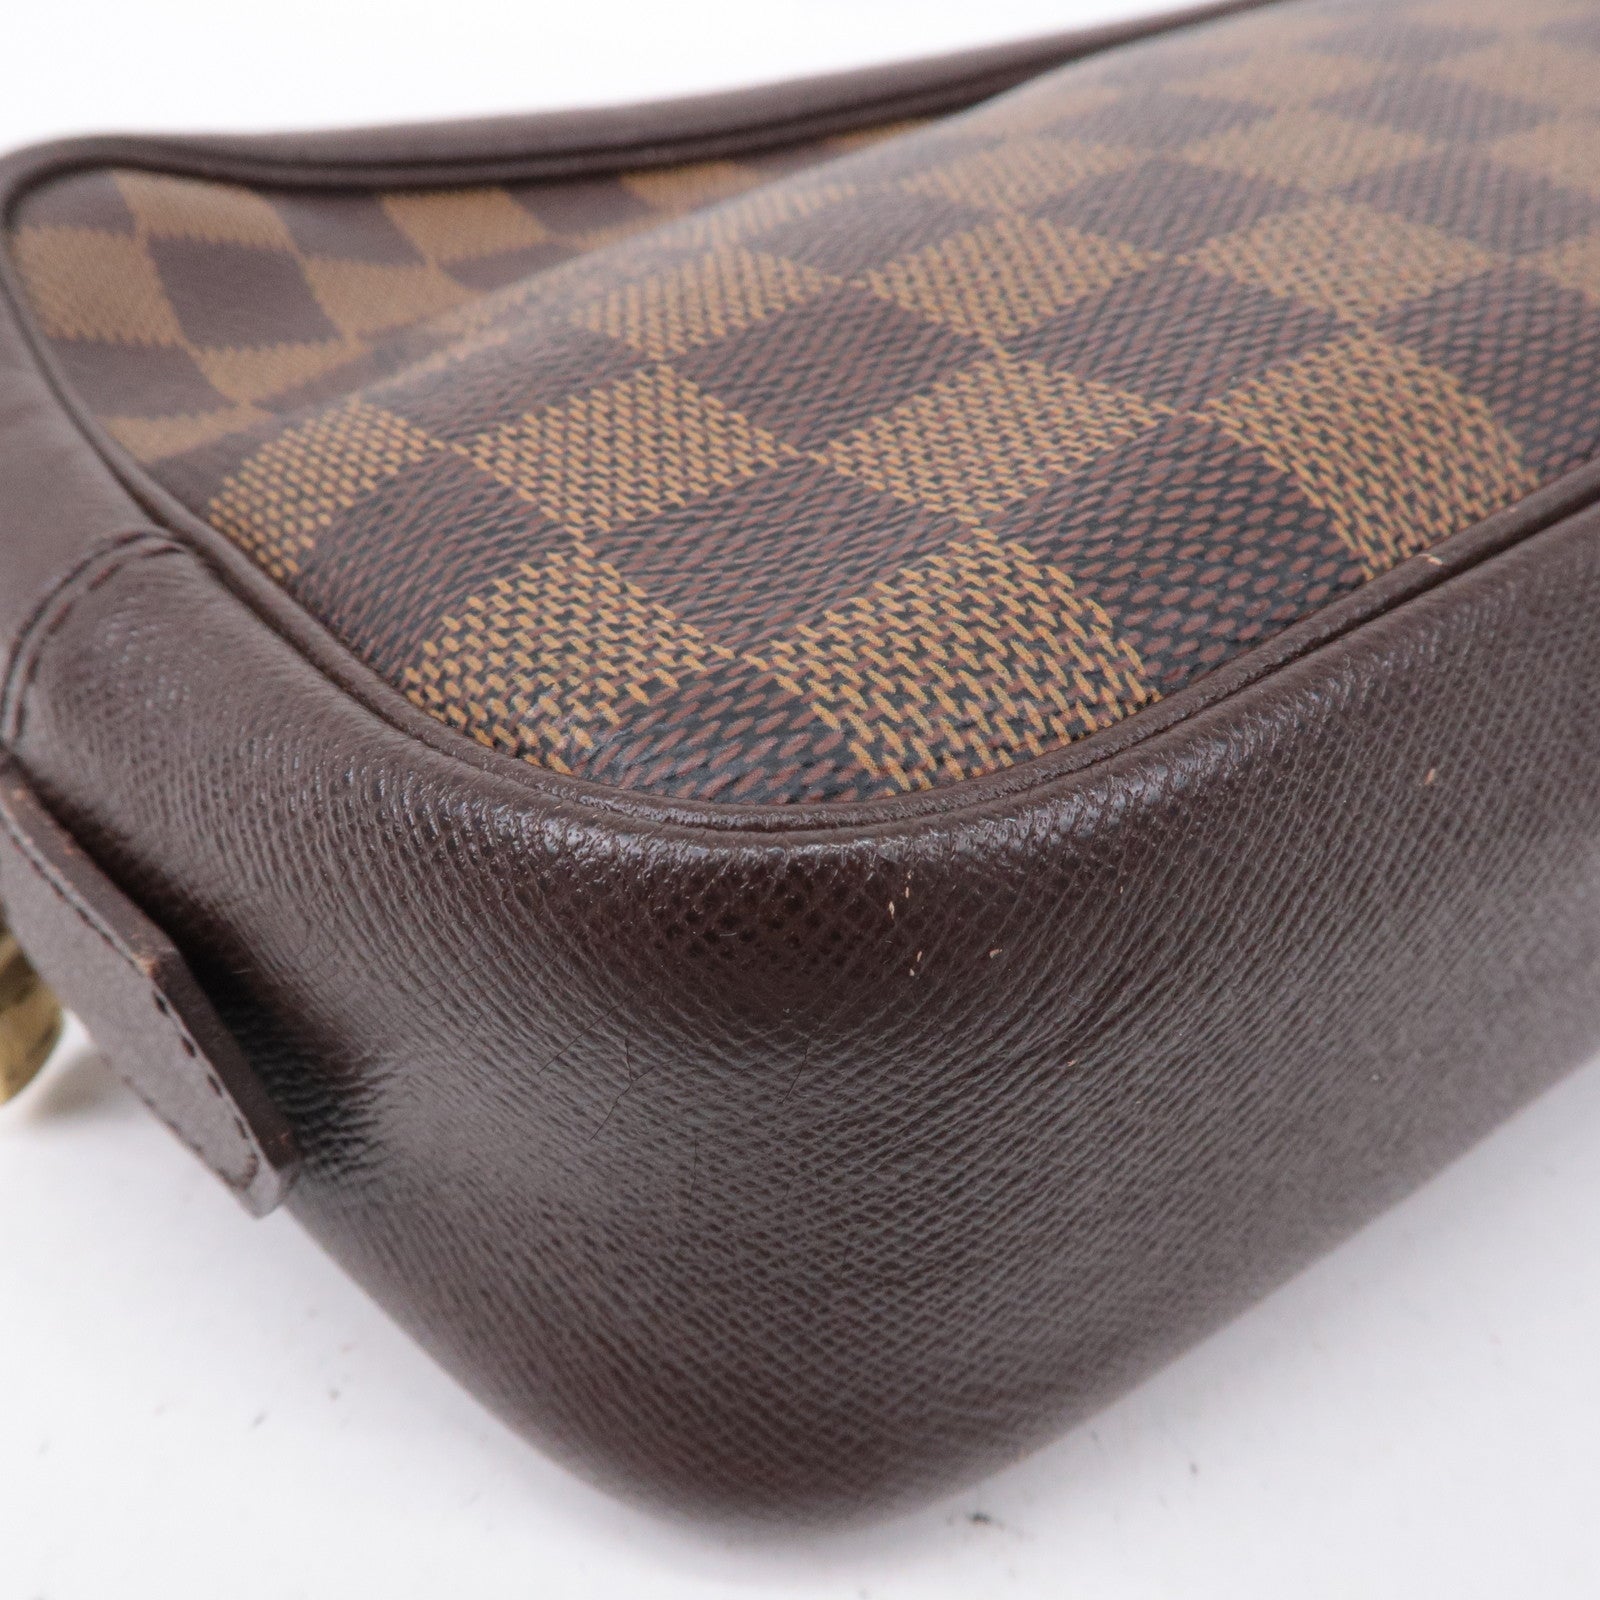 Authentic Louis Vuitton Trousse Toilette 25 Damier Leather Clutch Bag Purse